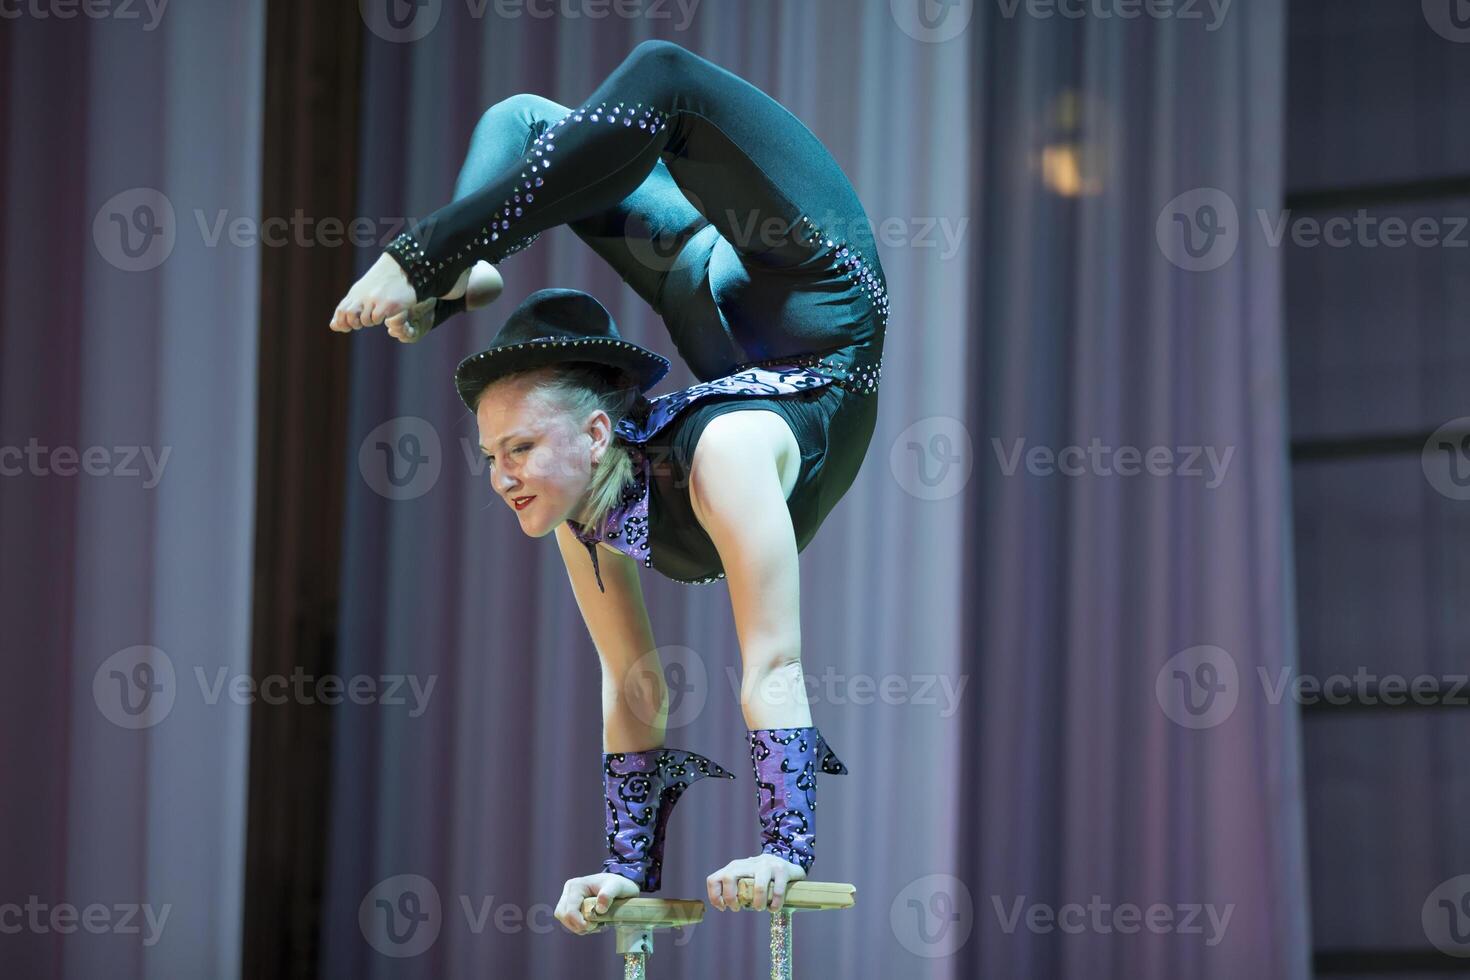 Wit-Rusland, gomel, juli 4, 2018. indicatief opleiding circus school.acrobatisch prestatie van de actrice.meisje met een flexibel lichaam.balanceren handelen foto